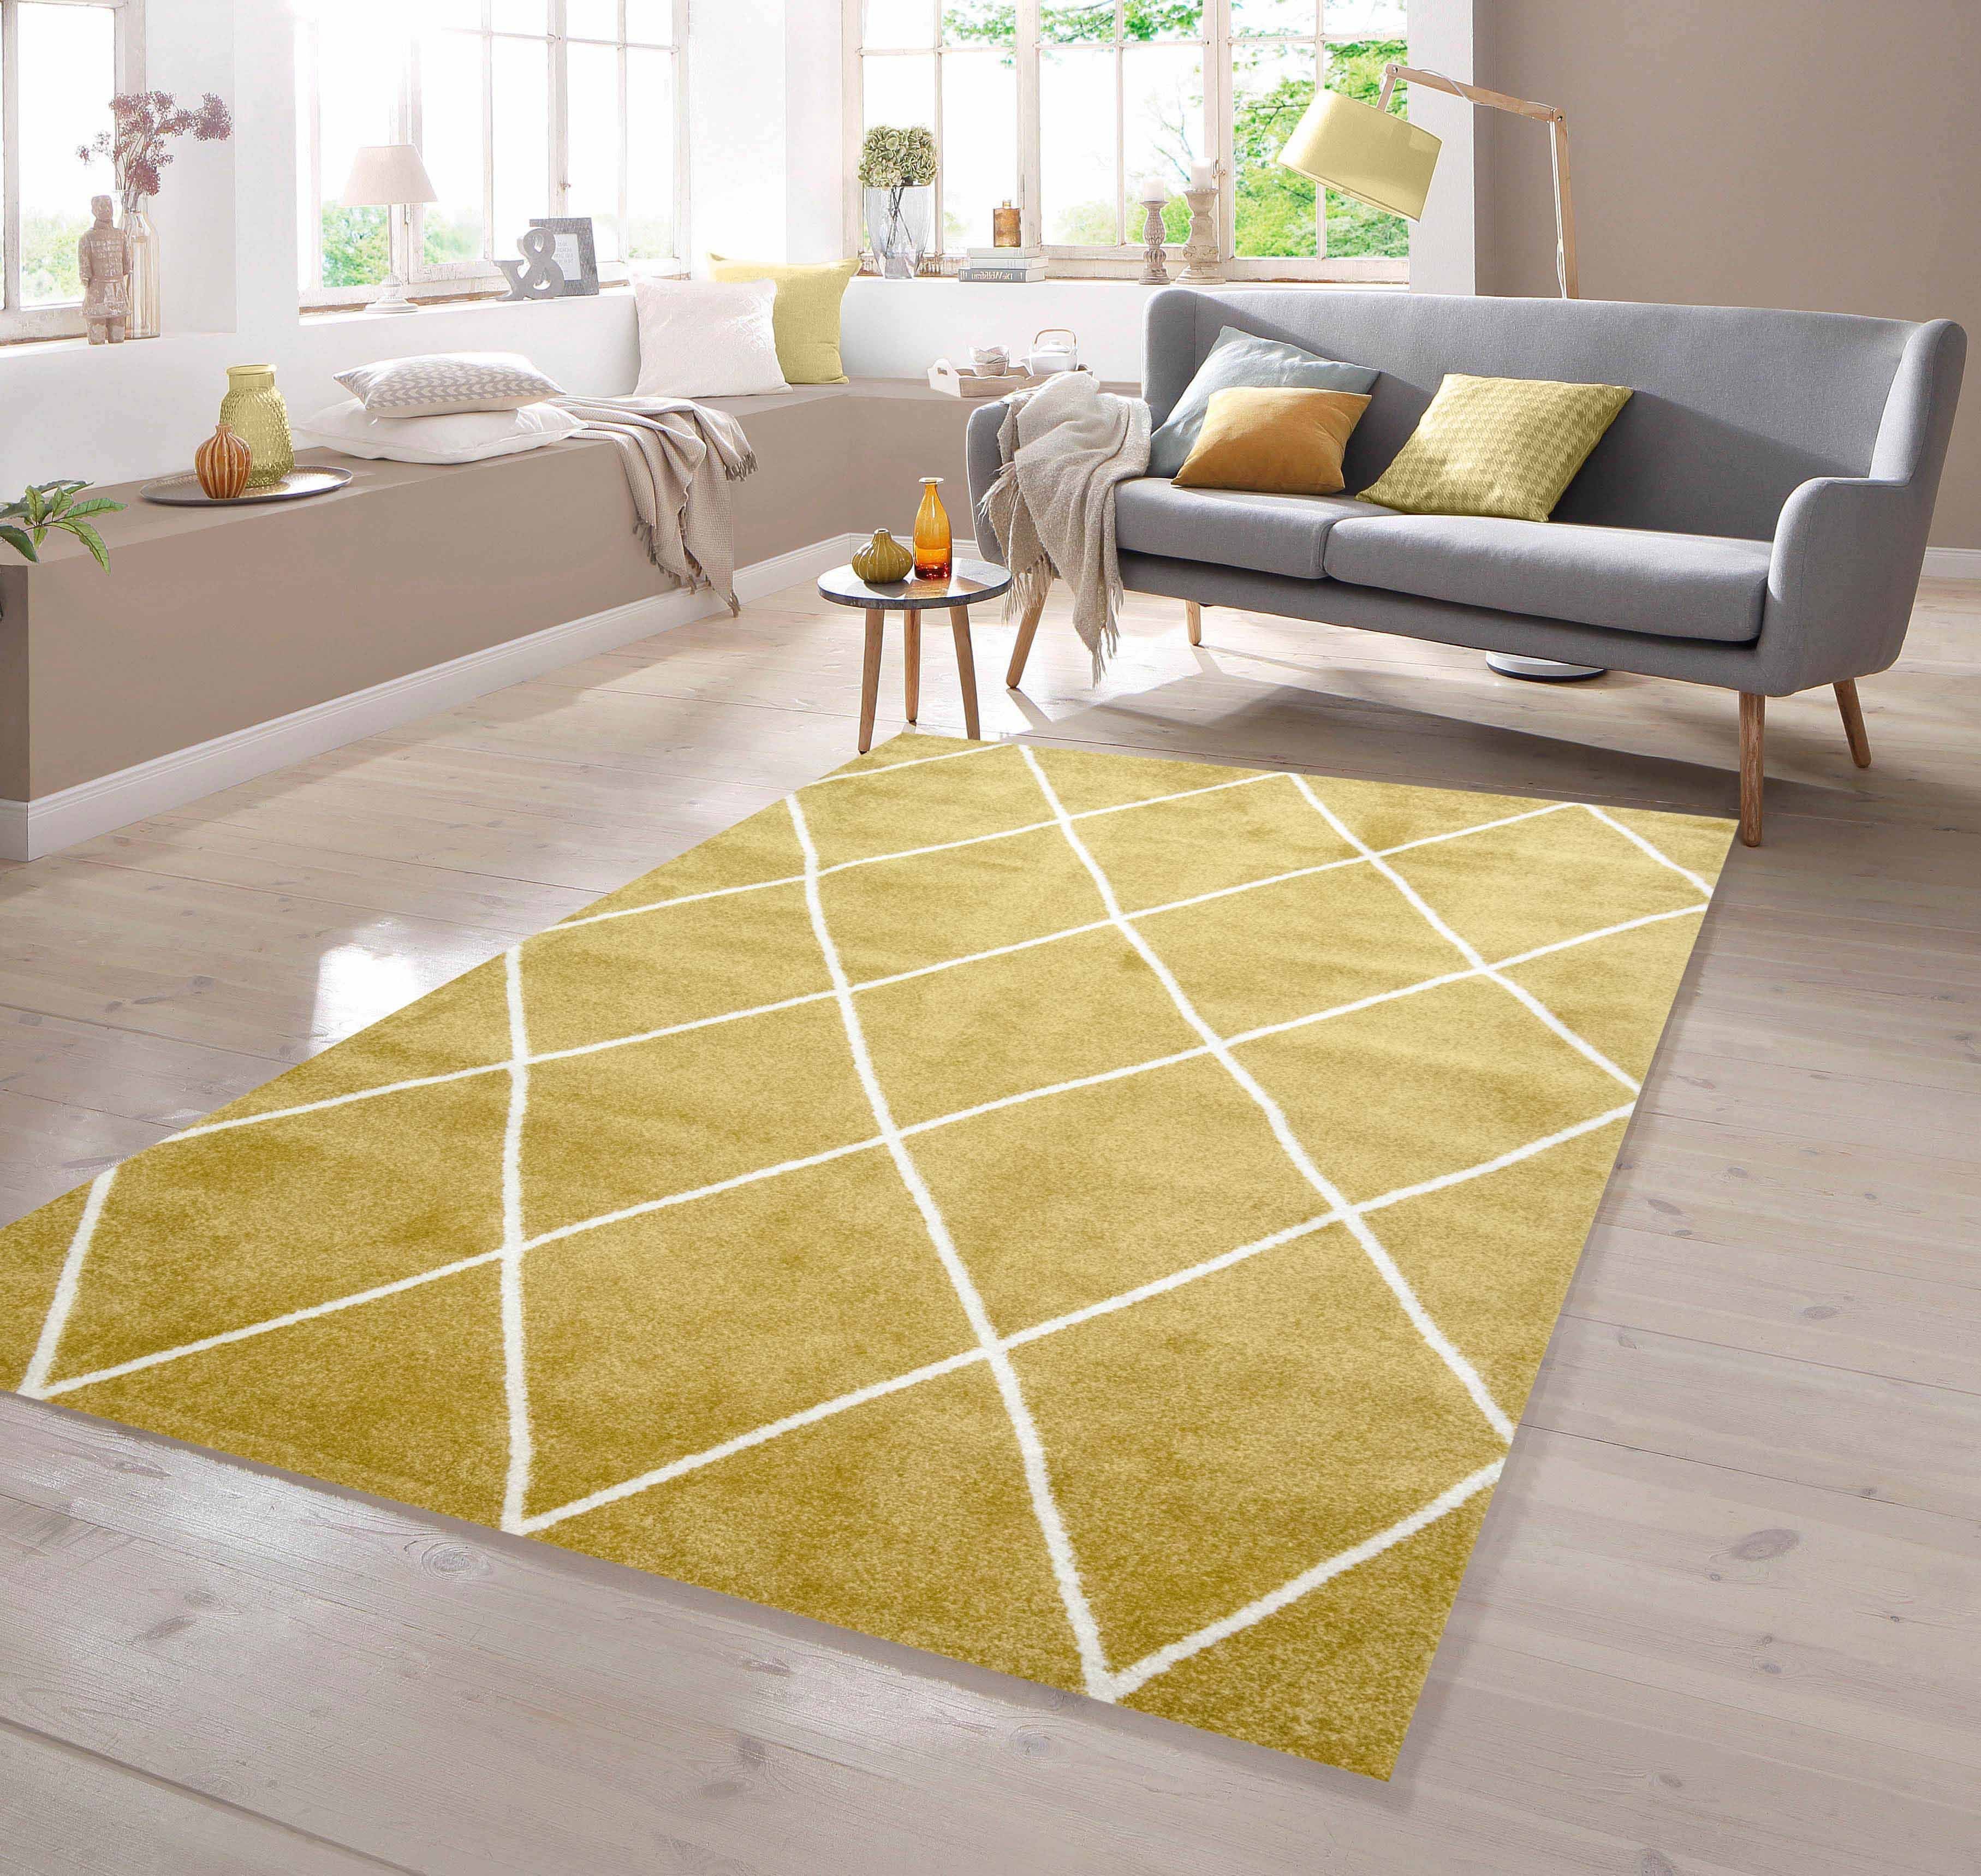 Teppich Teppich Skandinavischer Stil Rautenmuster gold creme weiß, TeppichHome24, rechteckig